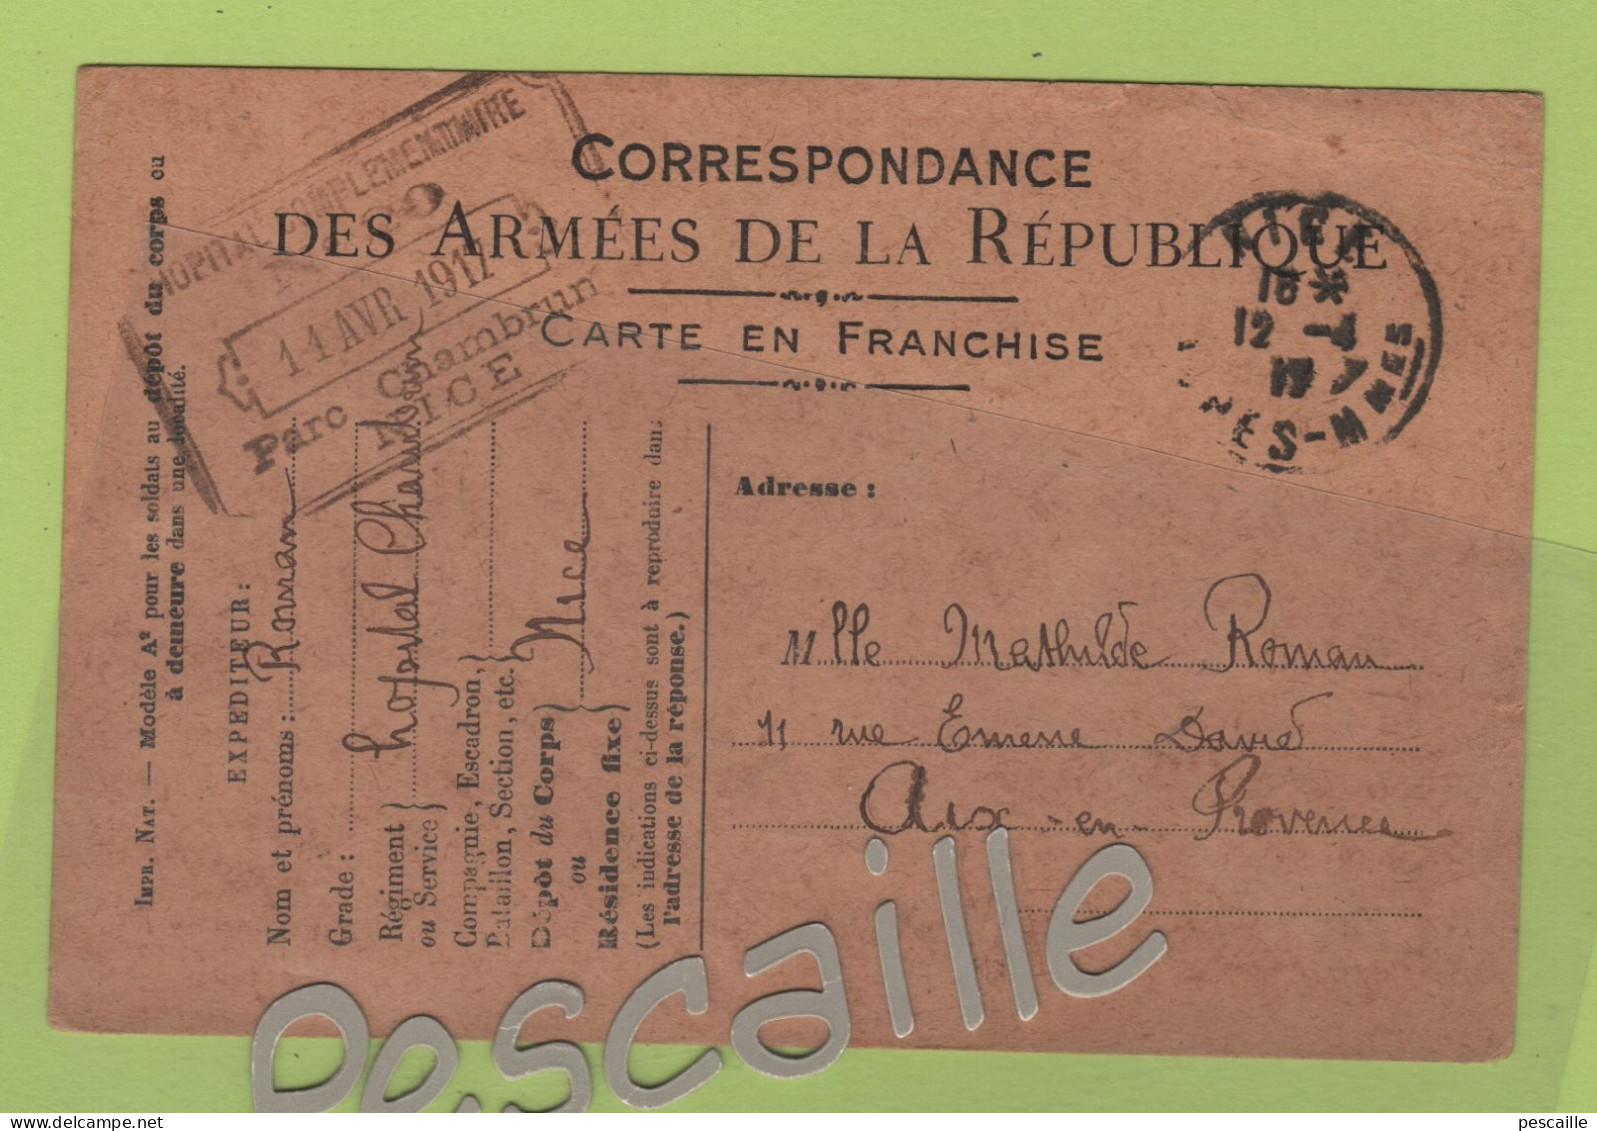 MILITARIA - CP CORRESPONDANCE DES ARMEES DE LA REPUBLIQUE 1917 HOPITAL COMPLEMENTAIRE CHAMBRUN NICE - War 1914-18